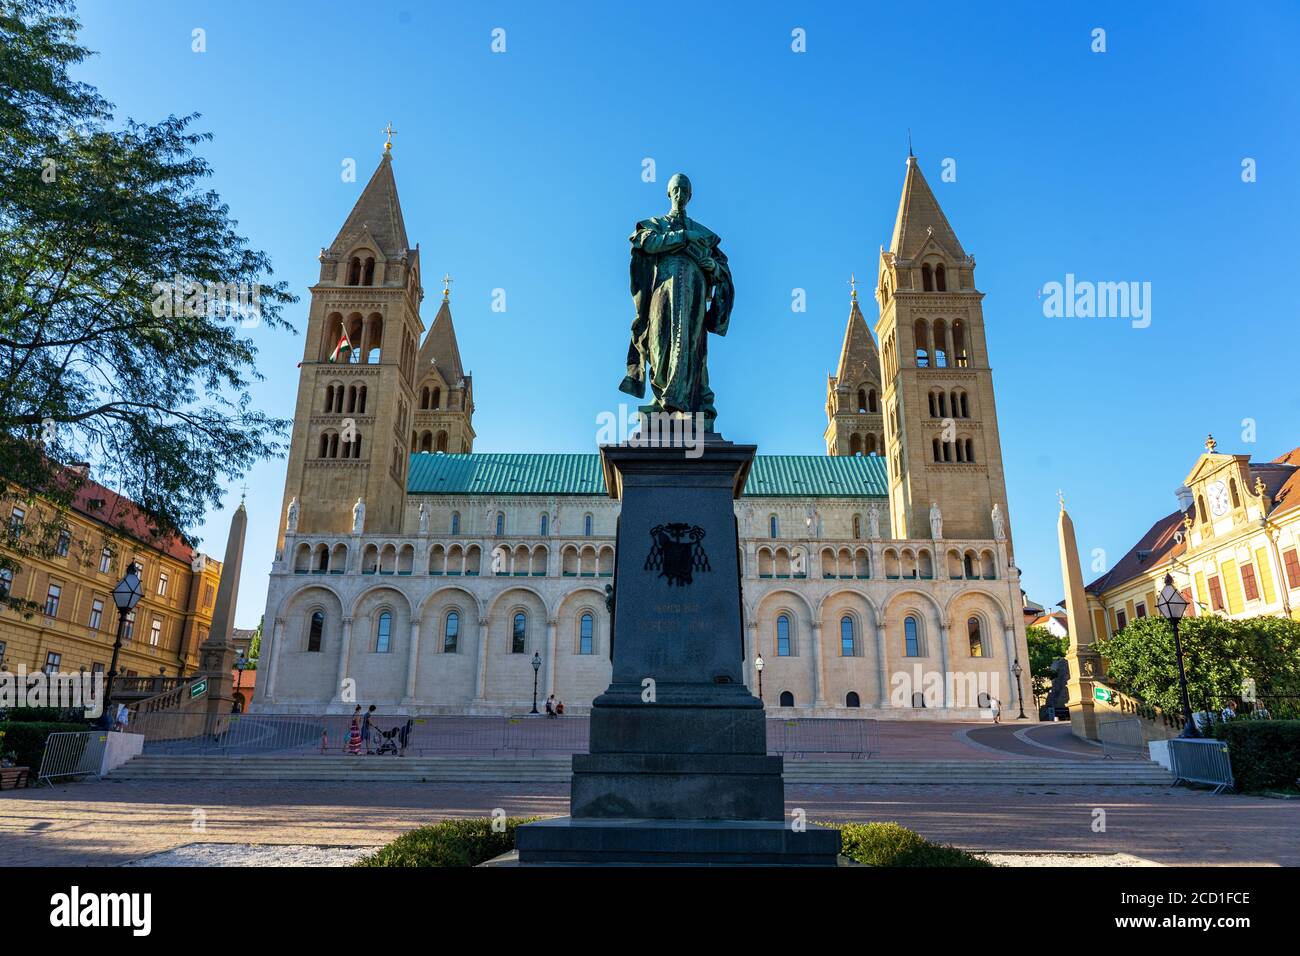 Statue von Ignac Szepesy und Basilika St. Peter & St. Paul, Pecs Kathedrale in Ungarn das Zeichen auf der Statue sagt Ignac Szepesy Bischof Stockfoto